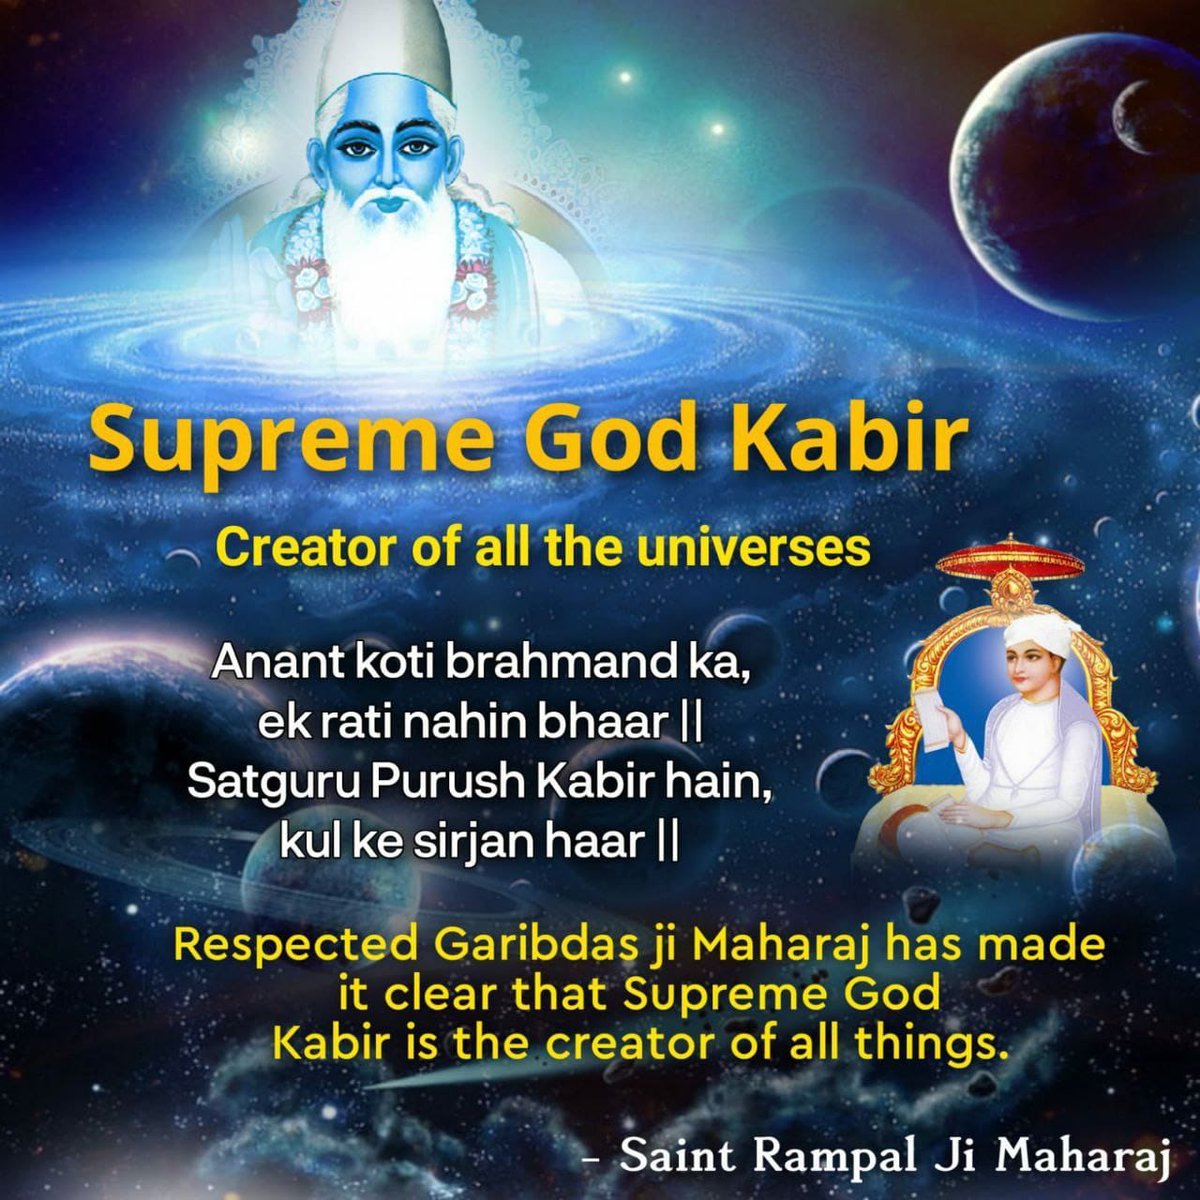 Supreme God Kabir Creator of all the universes.
Anant koti brahmand ka, ek rati nahin bhaar
Satguru Purush Kabir hain, kul ke sirjan haar
Respected Garibdas ji Maharaj has made it clear that the SatPurush Kabir Saheb is the creator of all things.

#SaintRampalJiMaharaj